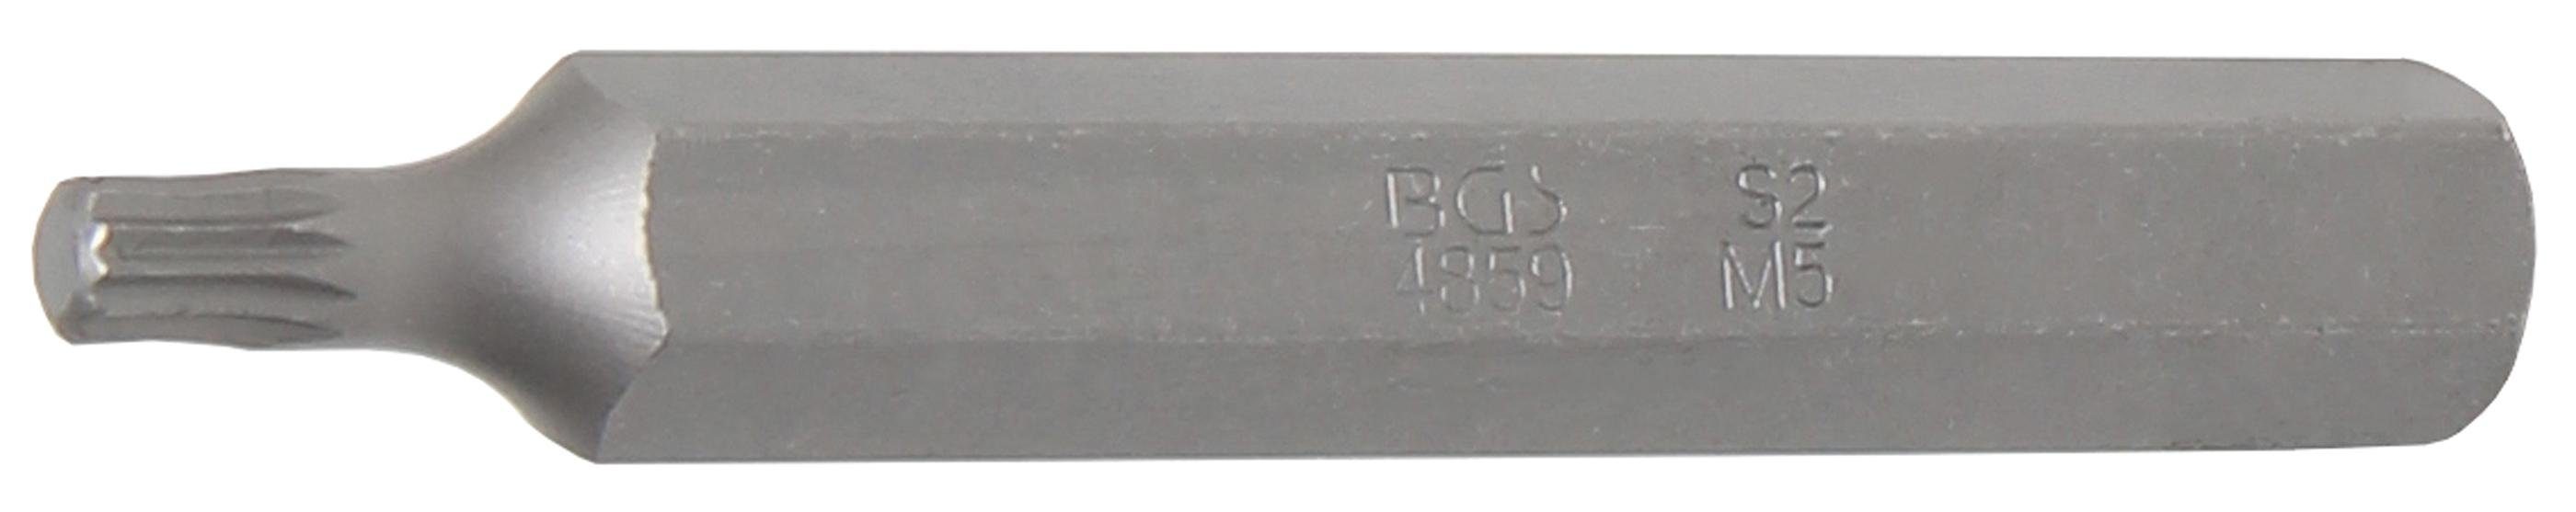 Bit-Schraubendreher BGS mm, (für 75 mm Länge 10 M5 Innenvielzahn technic Antrieb (3/8), Außensechskant Bit, XZN)